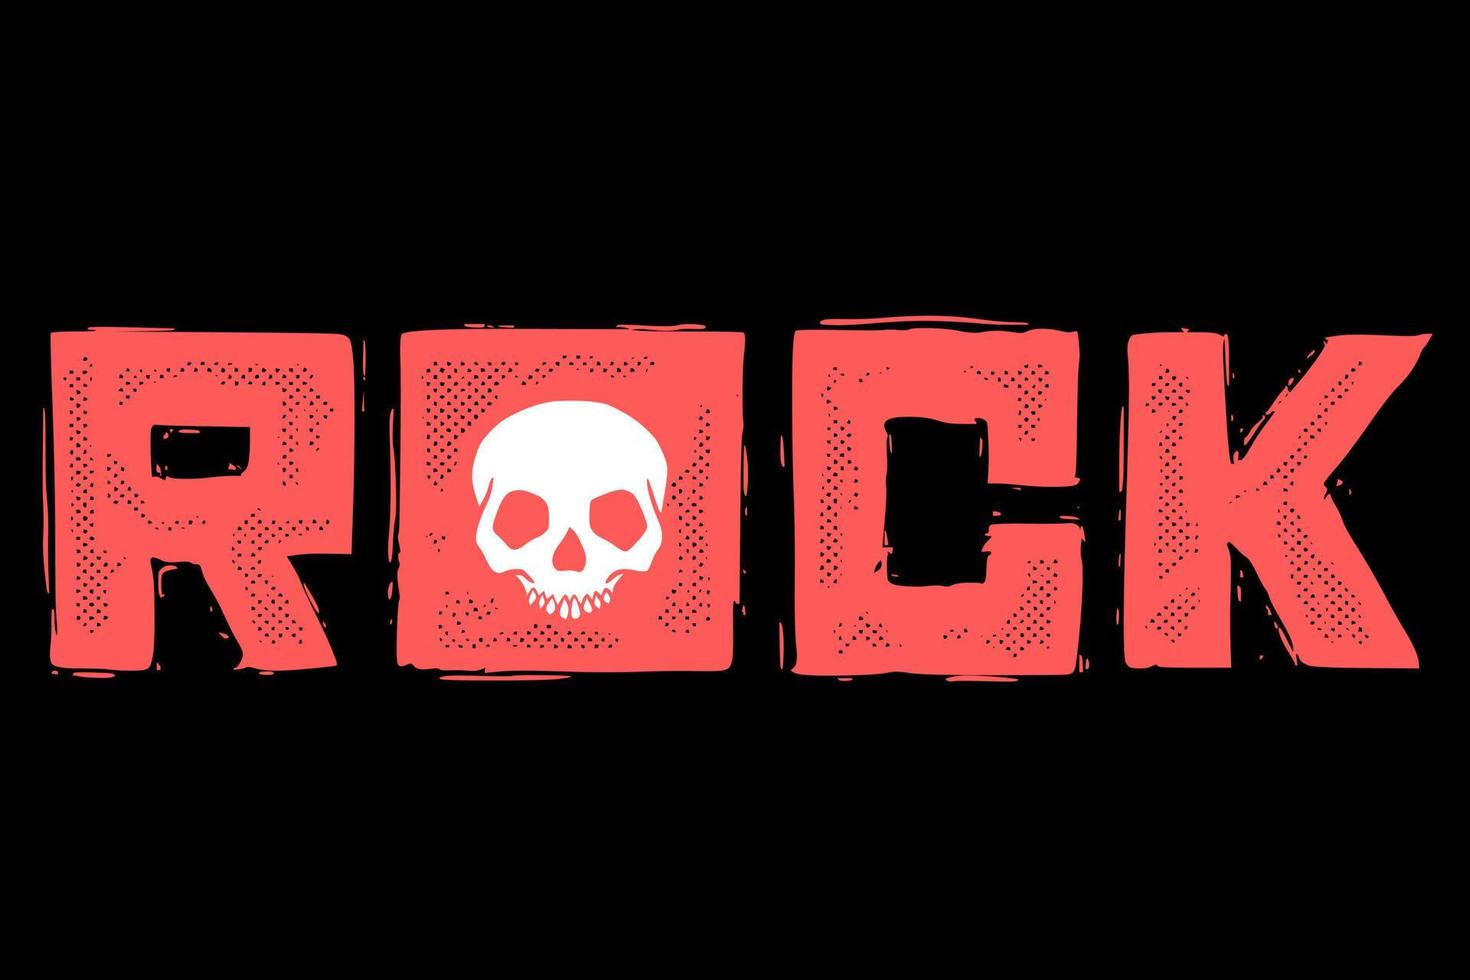 vector de ilustración de cráneo de roca para imprimir en camiseta, afiche, logotipo, pegatinas, etc.